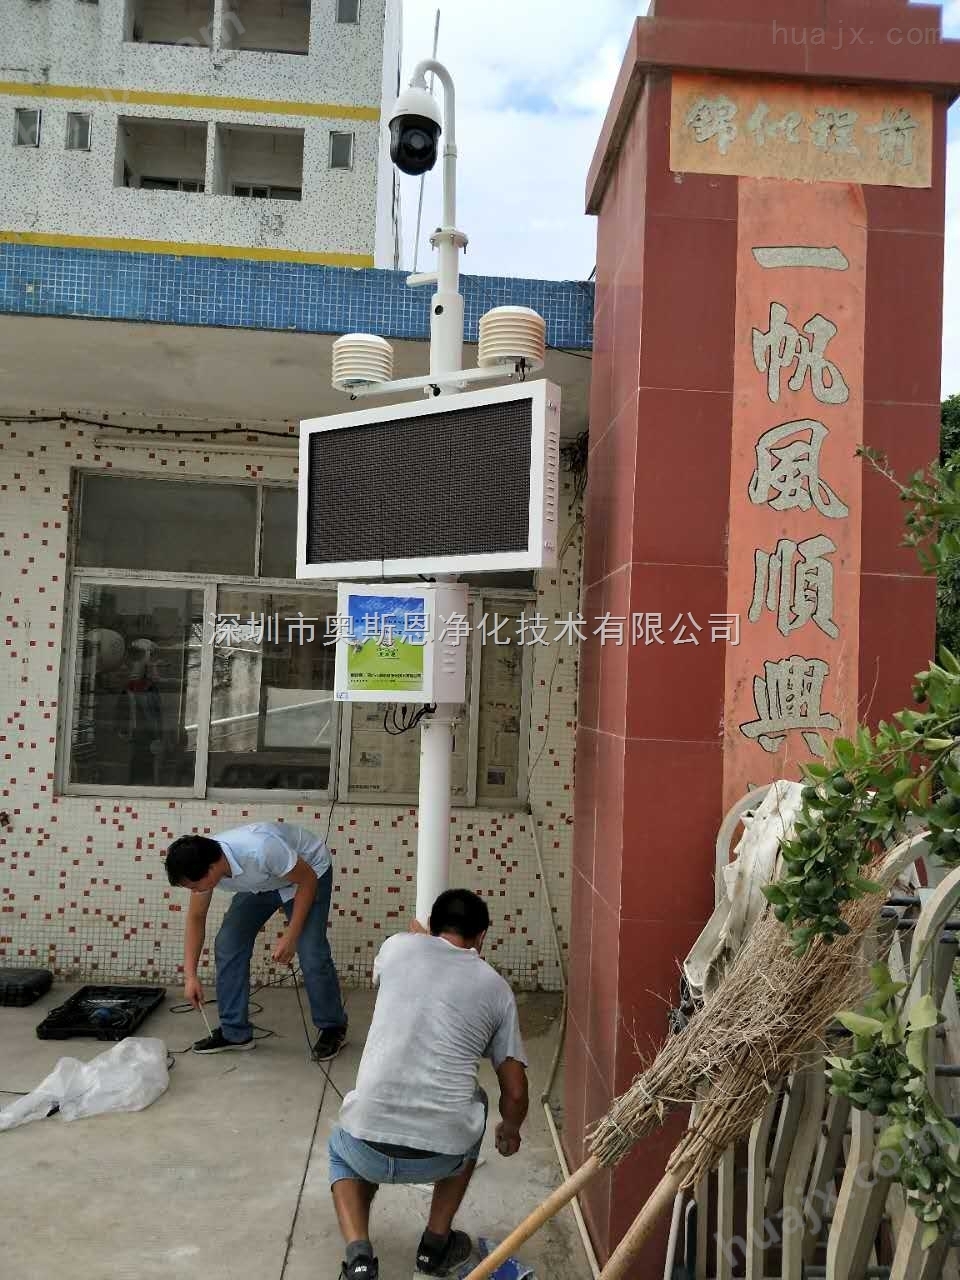 深圳东大洋混凝土安装TSP扬尘视频在线监控系统